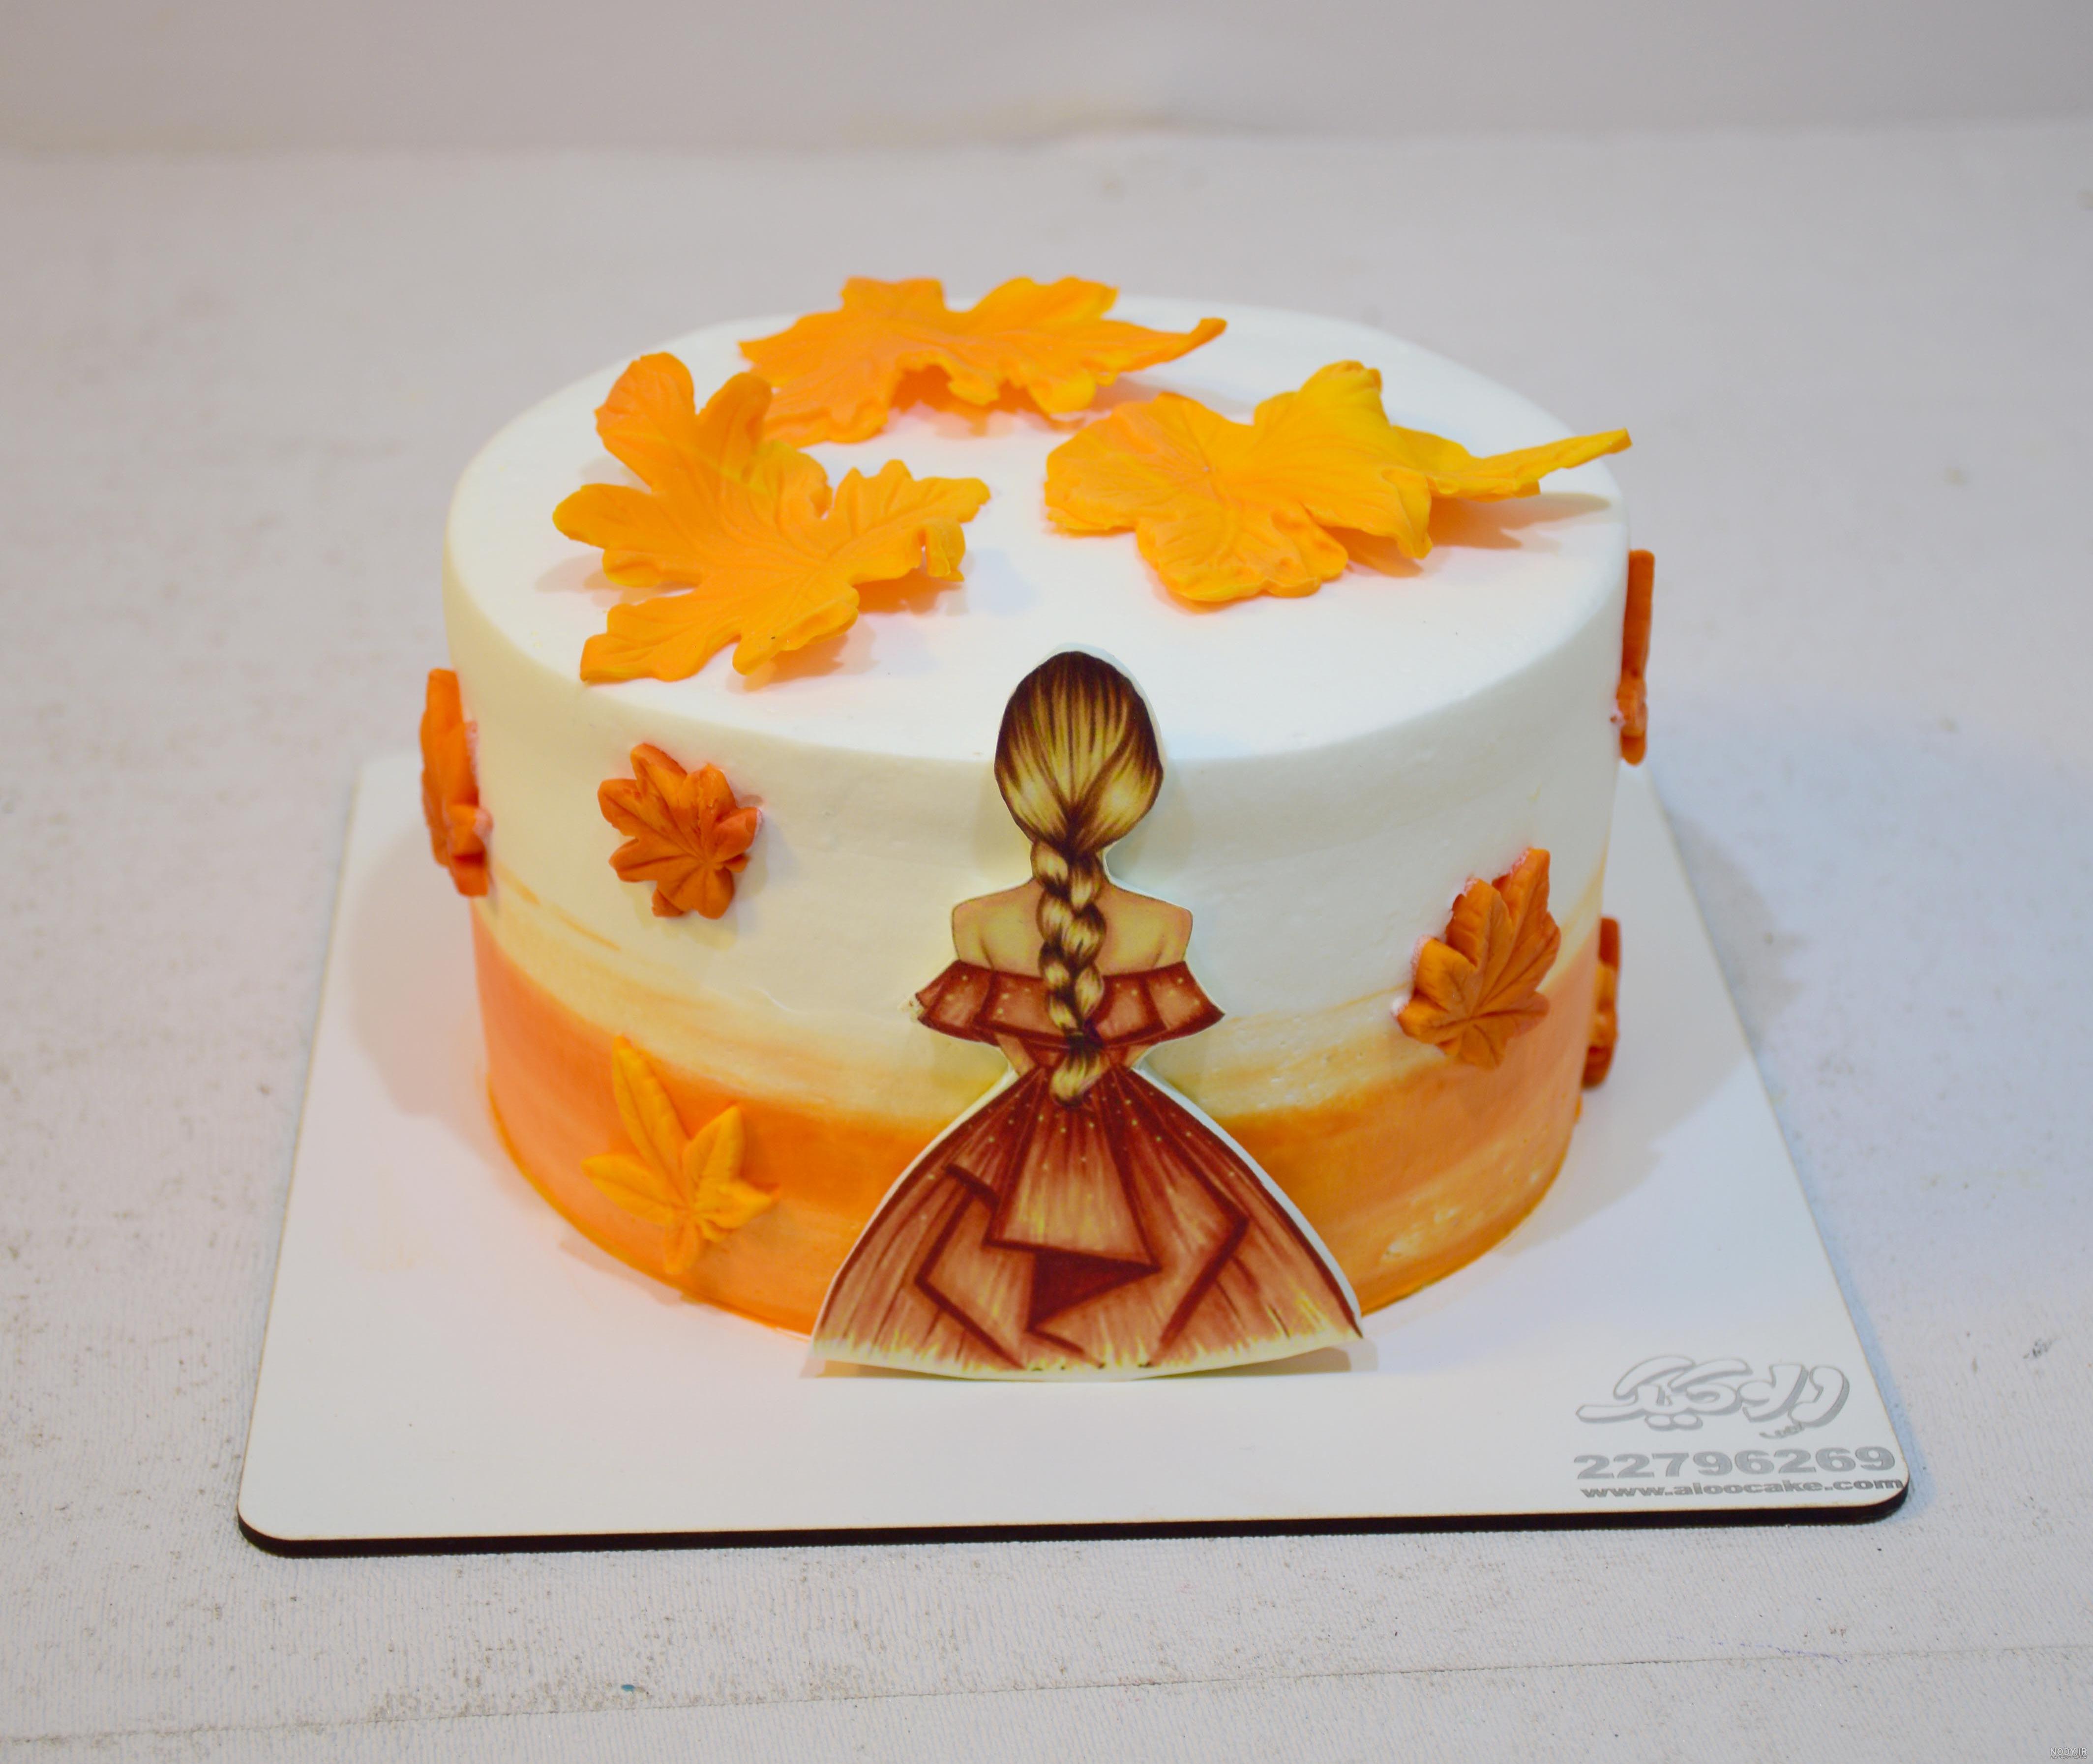 عکس دختر پاییزی فانتزی برای روی کیک